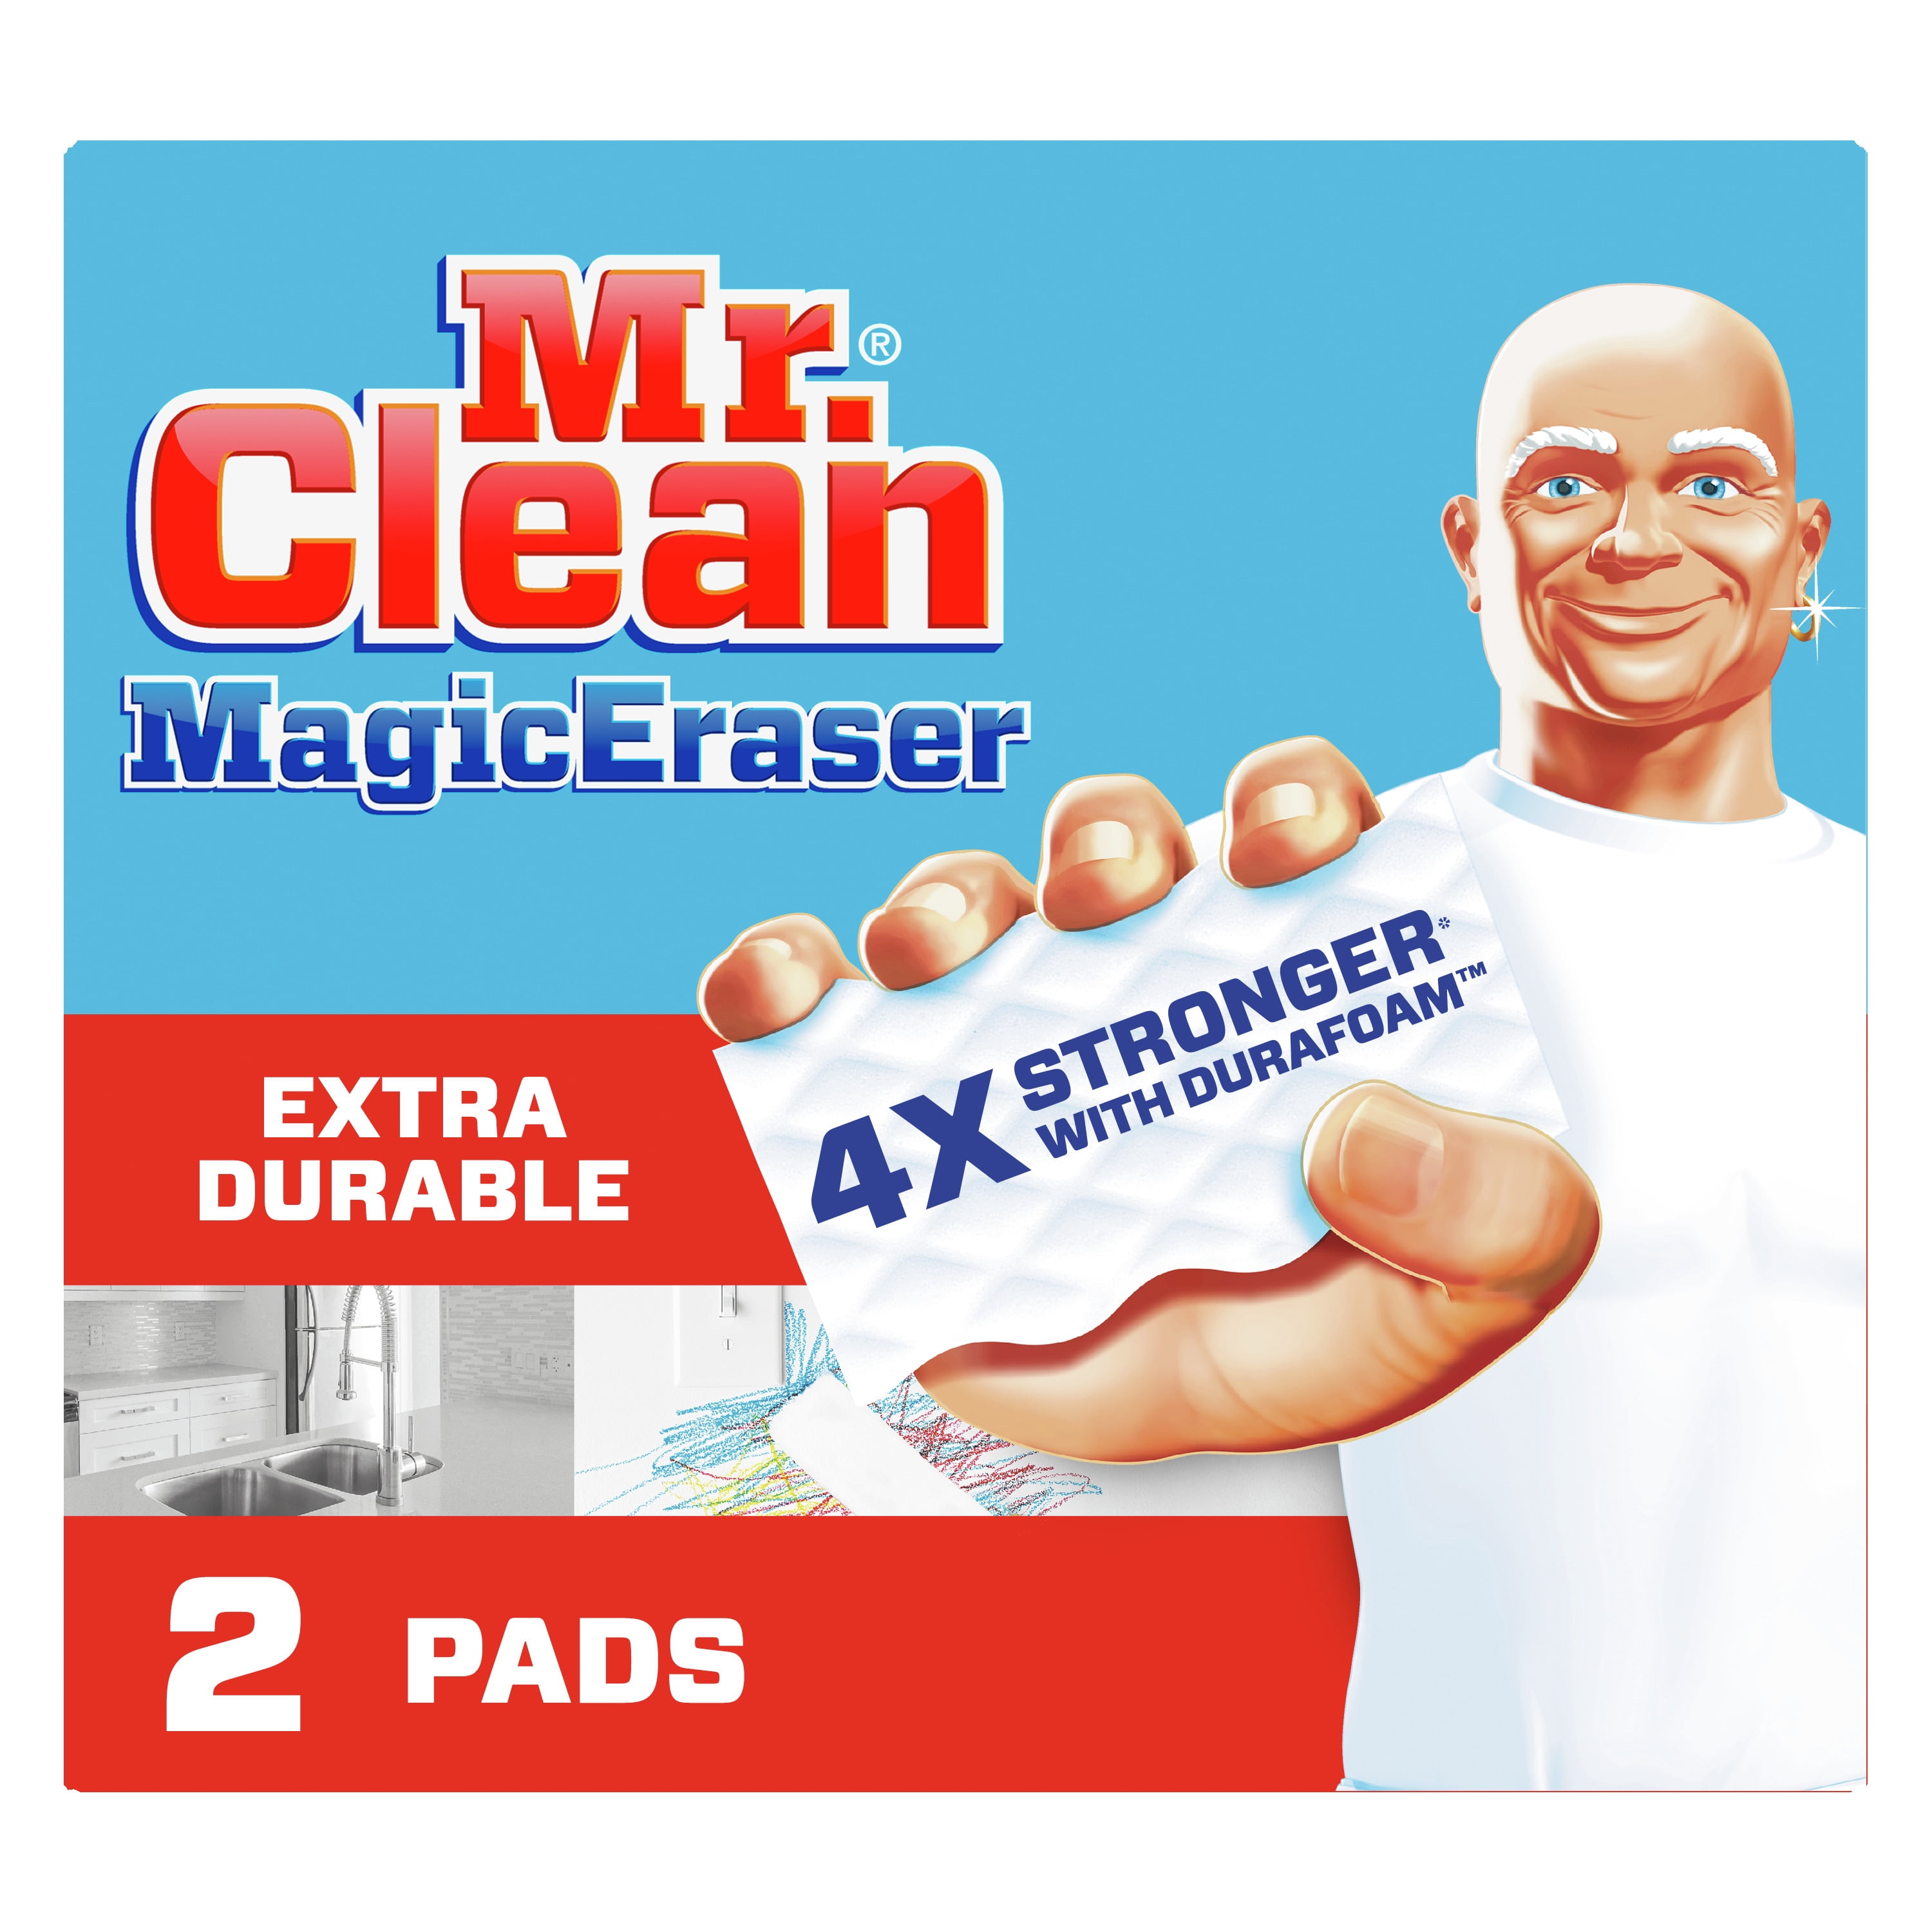 Bọt tẩy sạch Mr. Clean Magic Eraser Extra Durable với Durafoam ... Hãy xem hình ảnh liên quan đến bọt tẩy sạch Mr. Clean Magic Eraser Extra Durable với Durafoam và khám phá cách sản phẩm này giúp bạn dễ dàng tẩy sạch mọi vết bẩn khó chịu trong nhà. Chất liệu Durafoam nổi bật của sản phẩm sẽ giúp bạn tiết kiệm được thời gian và năng lượng mà vẫn mang lại hiệu quả đáng kinh ngạc.